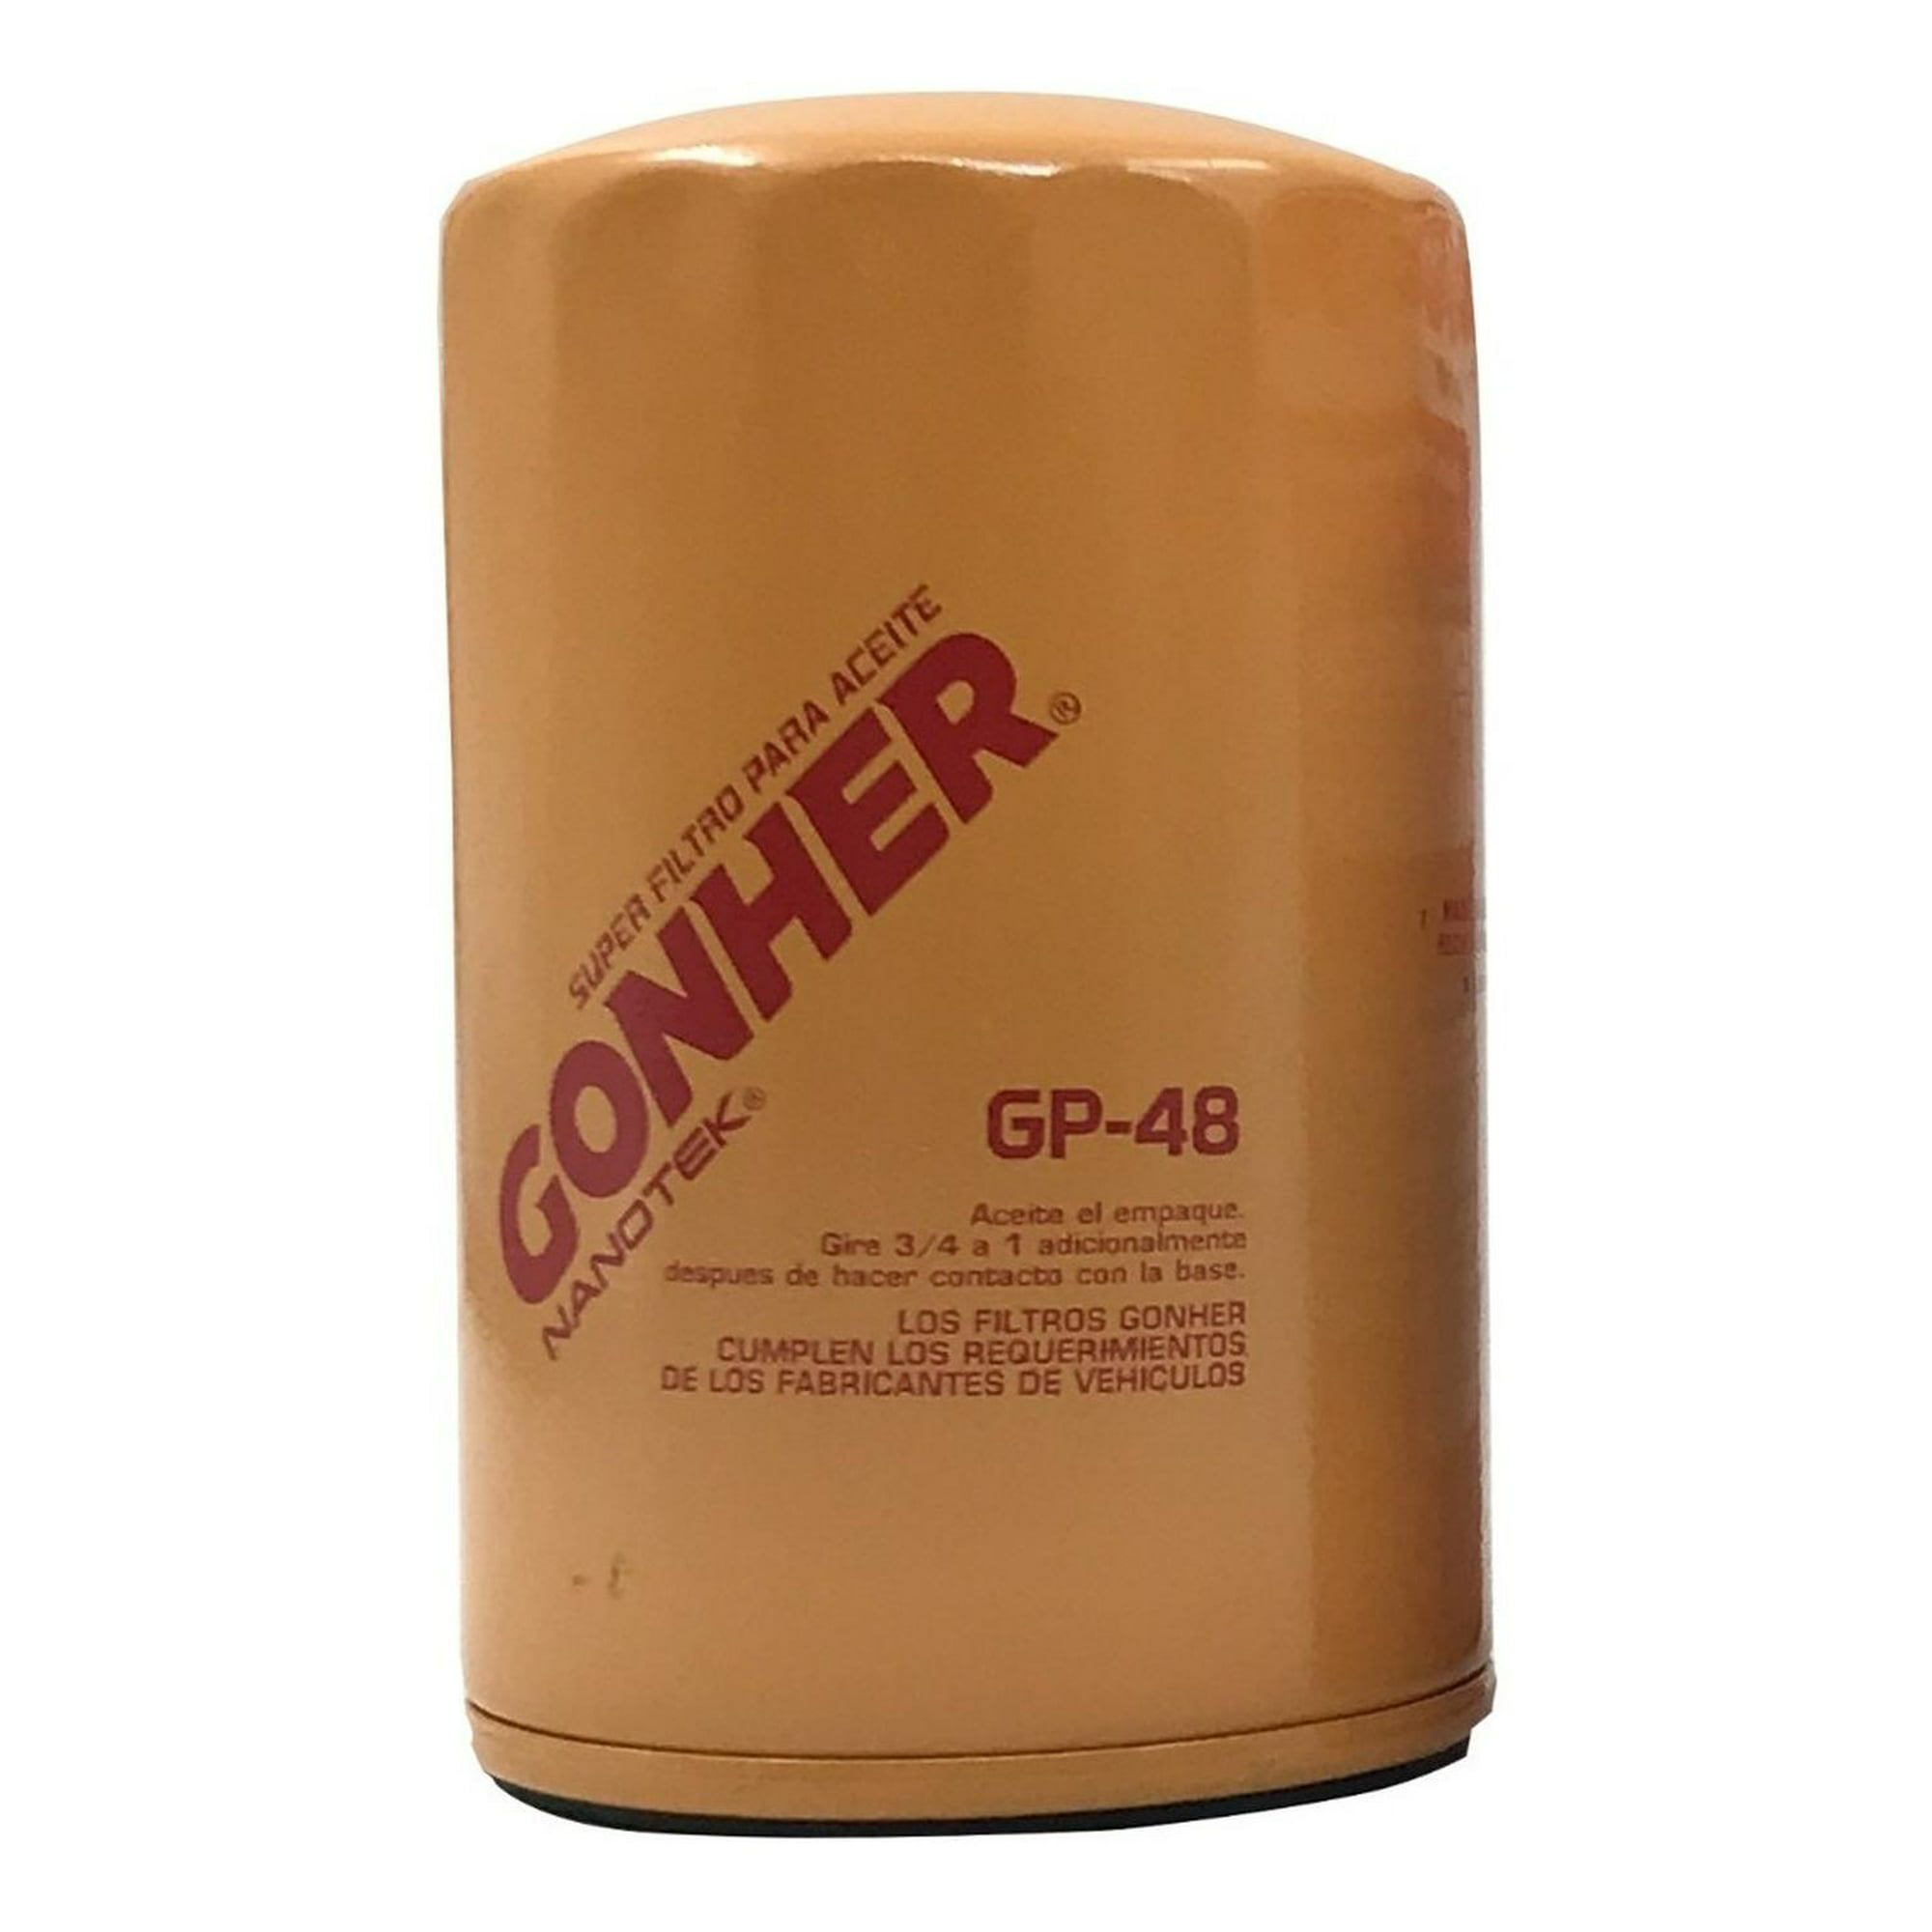 Filtro Aceite Gonher Gp-149